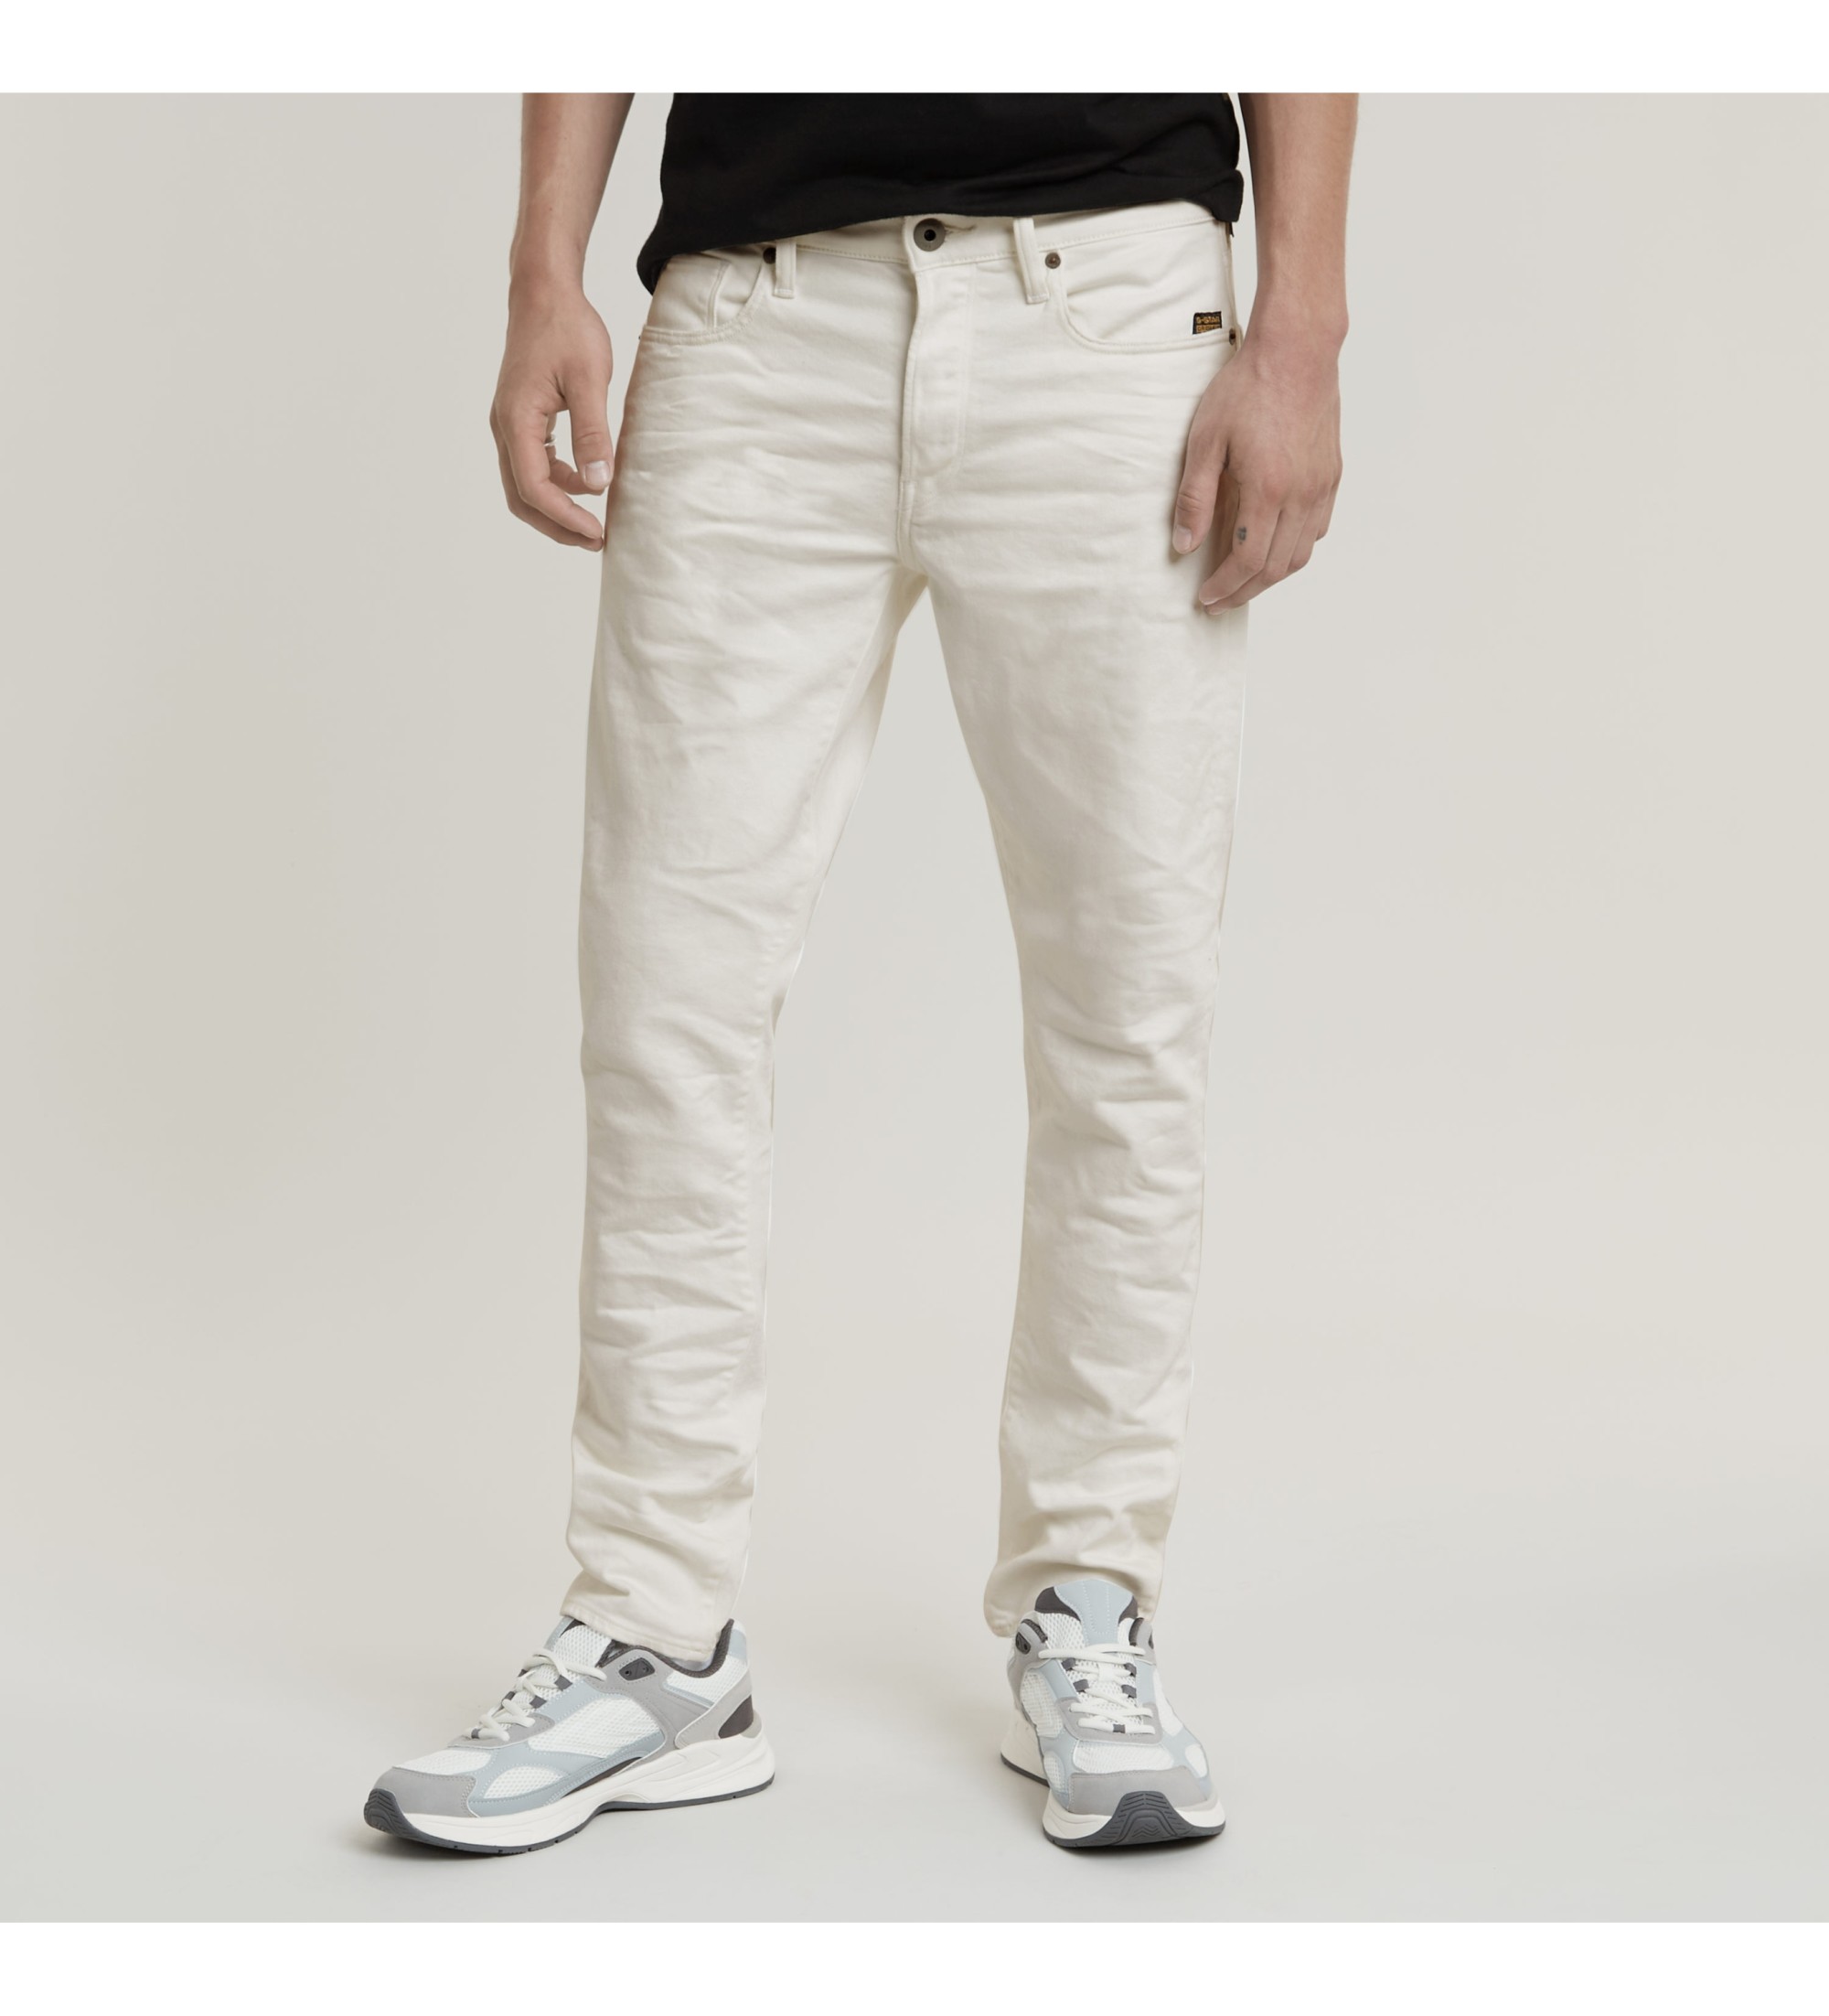 G-Star Jeans 3301 Slim blanco roto - Tienda Esdemarca calzado, moda y ...